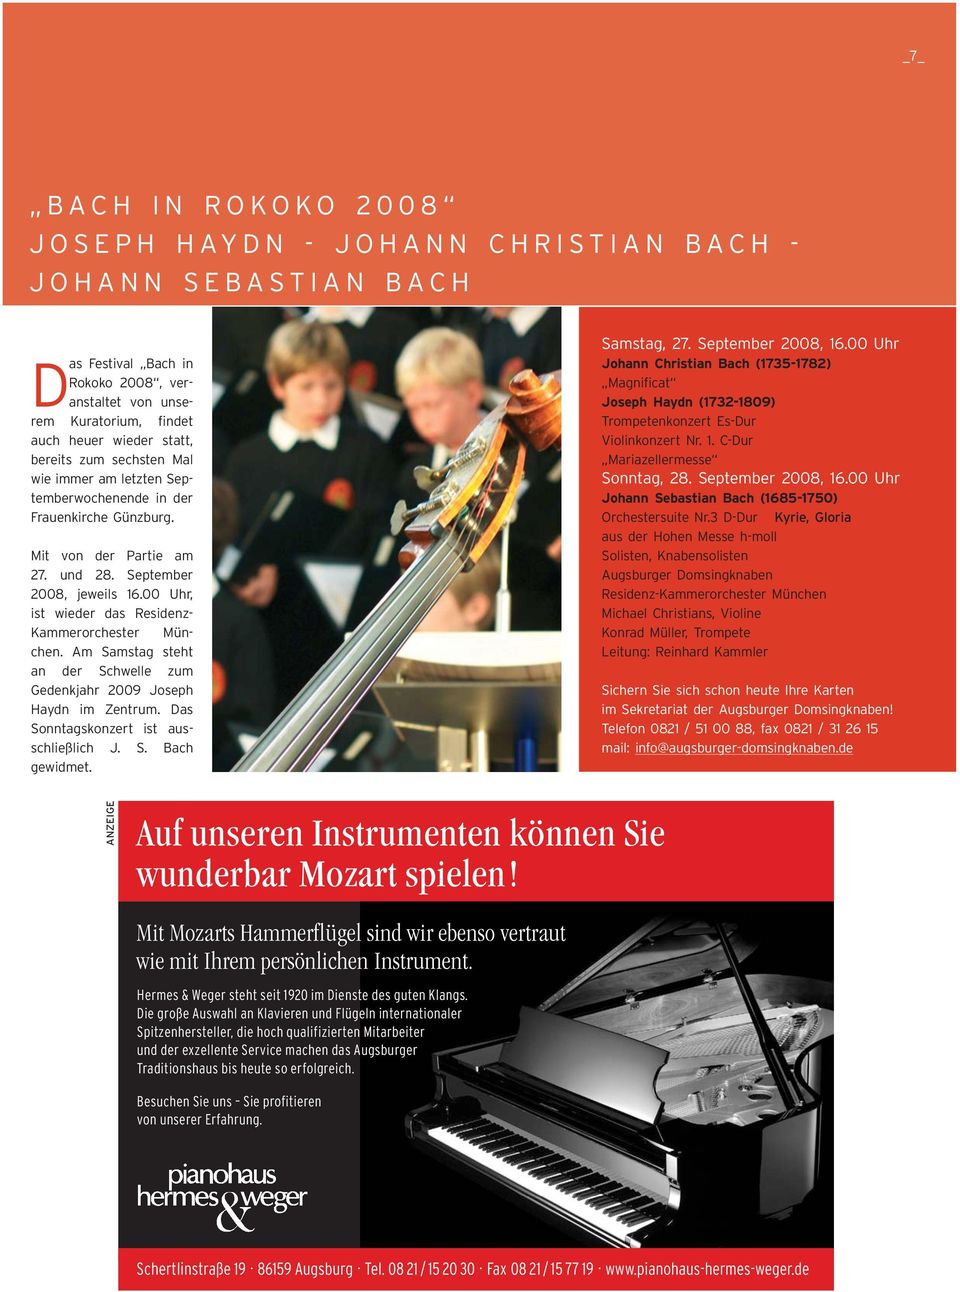 00 Uhr, ist wieder das Residenz- Kammerorchester München. Am Samstag steht an der Schwelle zum Gedenkjahr 2009 Joseph Haydn im Zentrum. Das Sonntagskonzert ist ausschließlich J. S. Bach gewidmet.